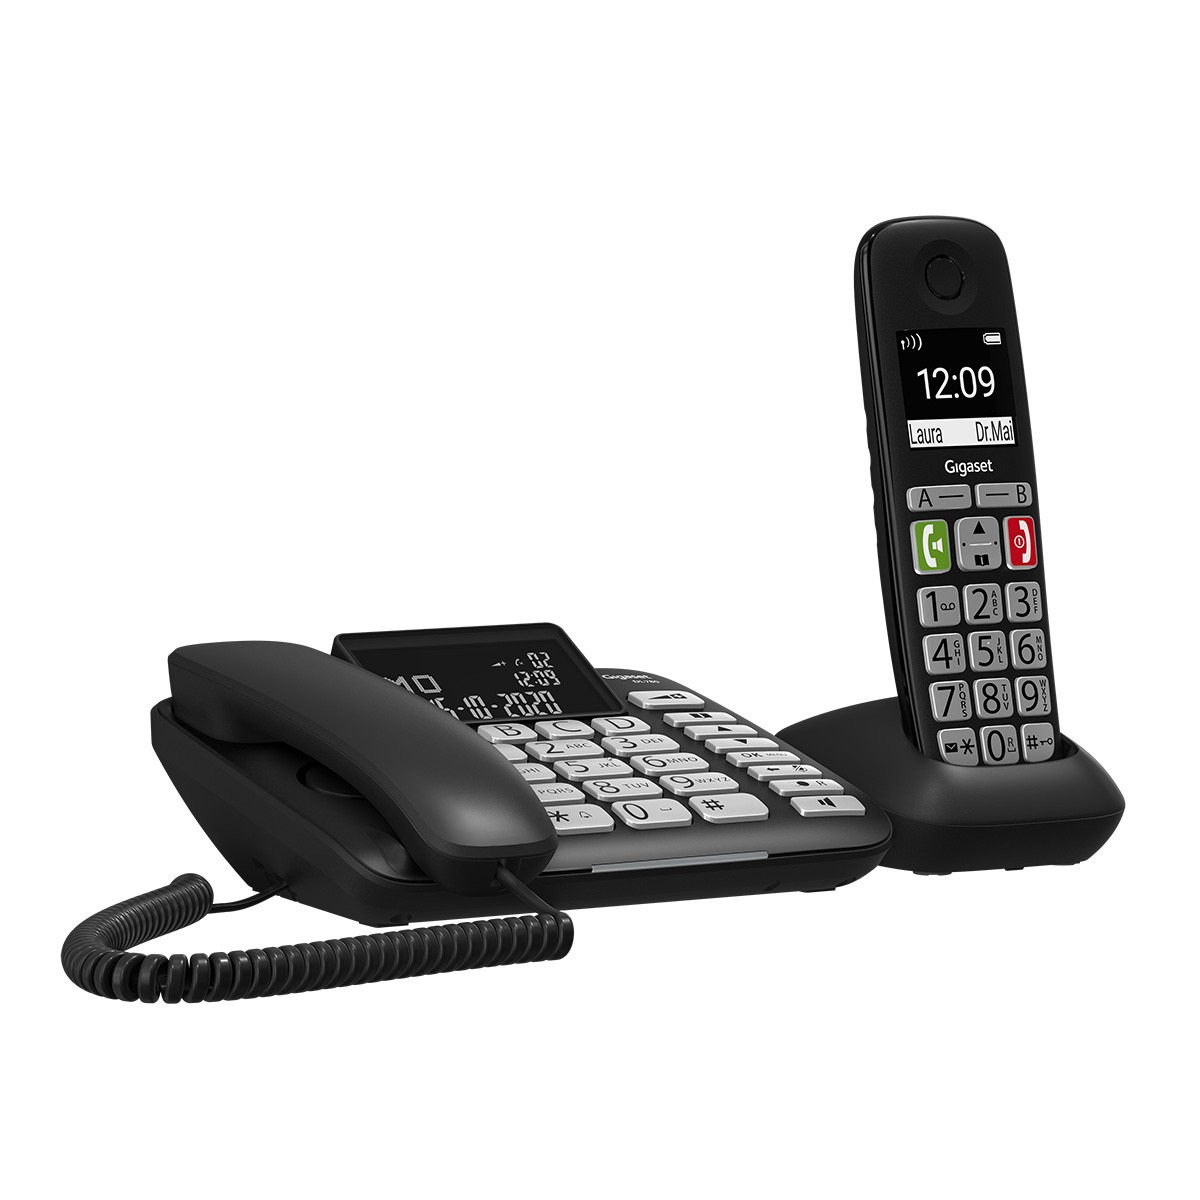 Gigaset DL780 Combi seniorentelefoon Huistelefoon Zwart